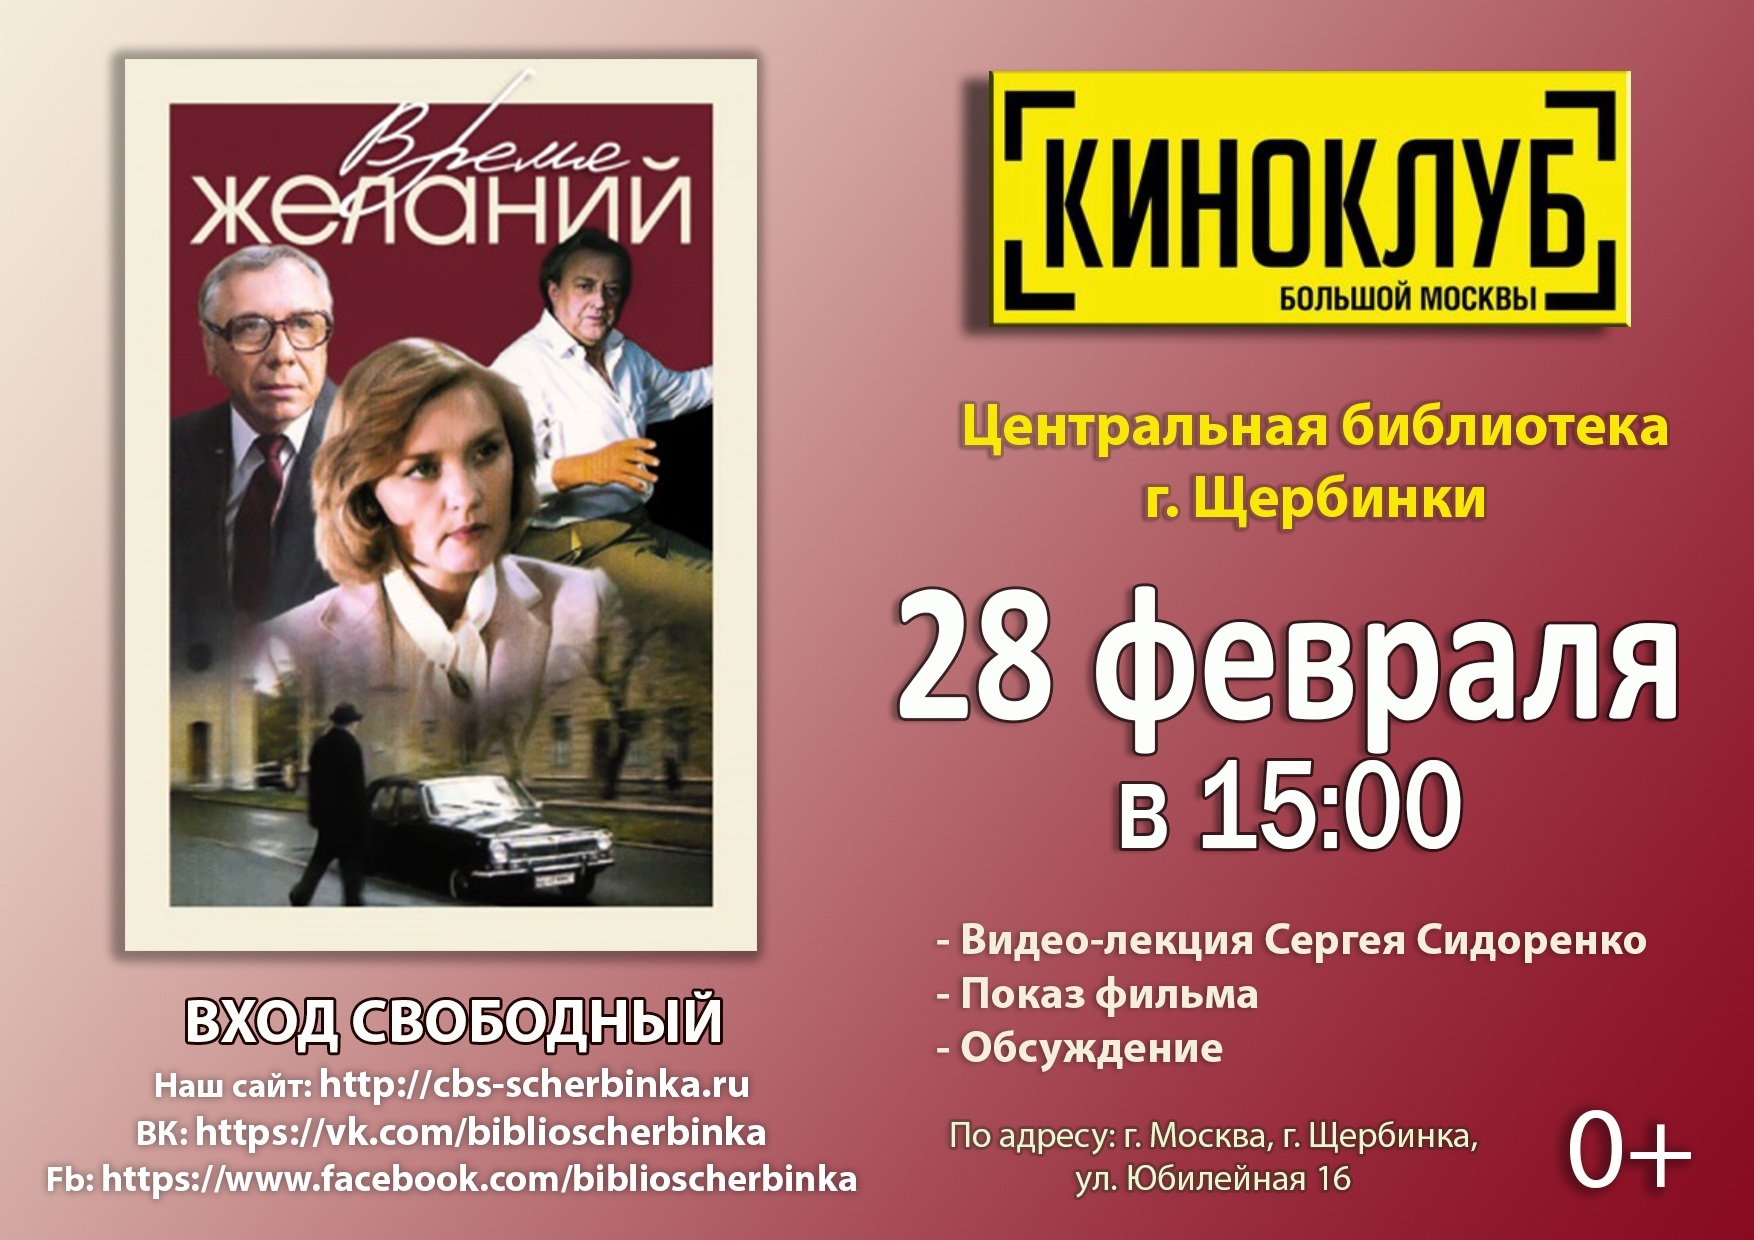 Фильм «Время желаний» покажут в Центральной библиотеке Щербинки 